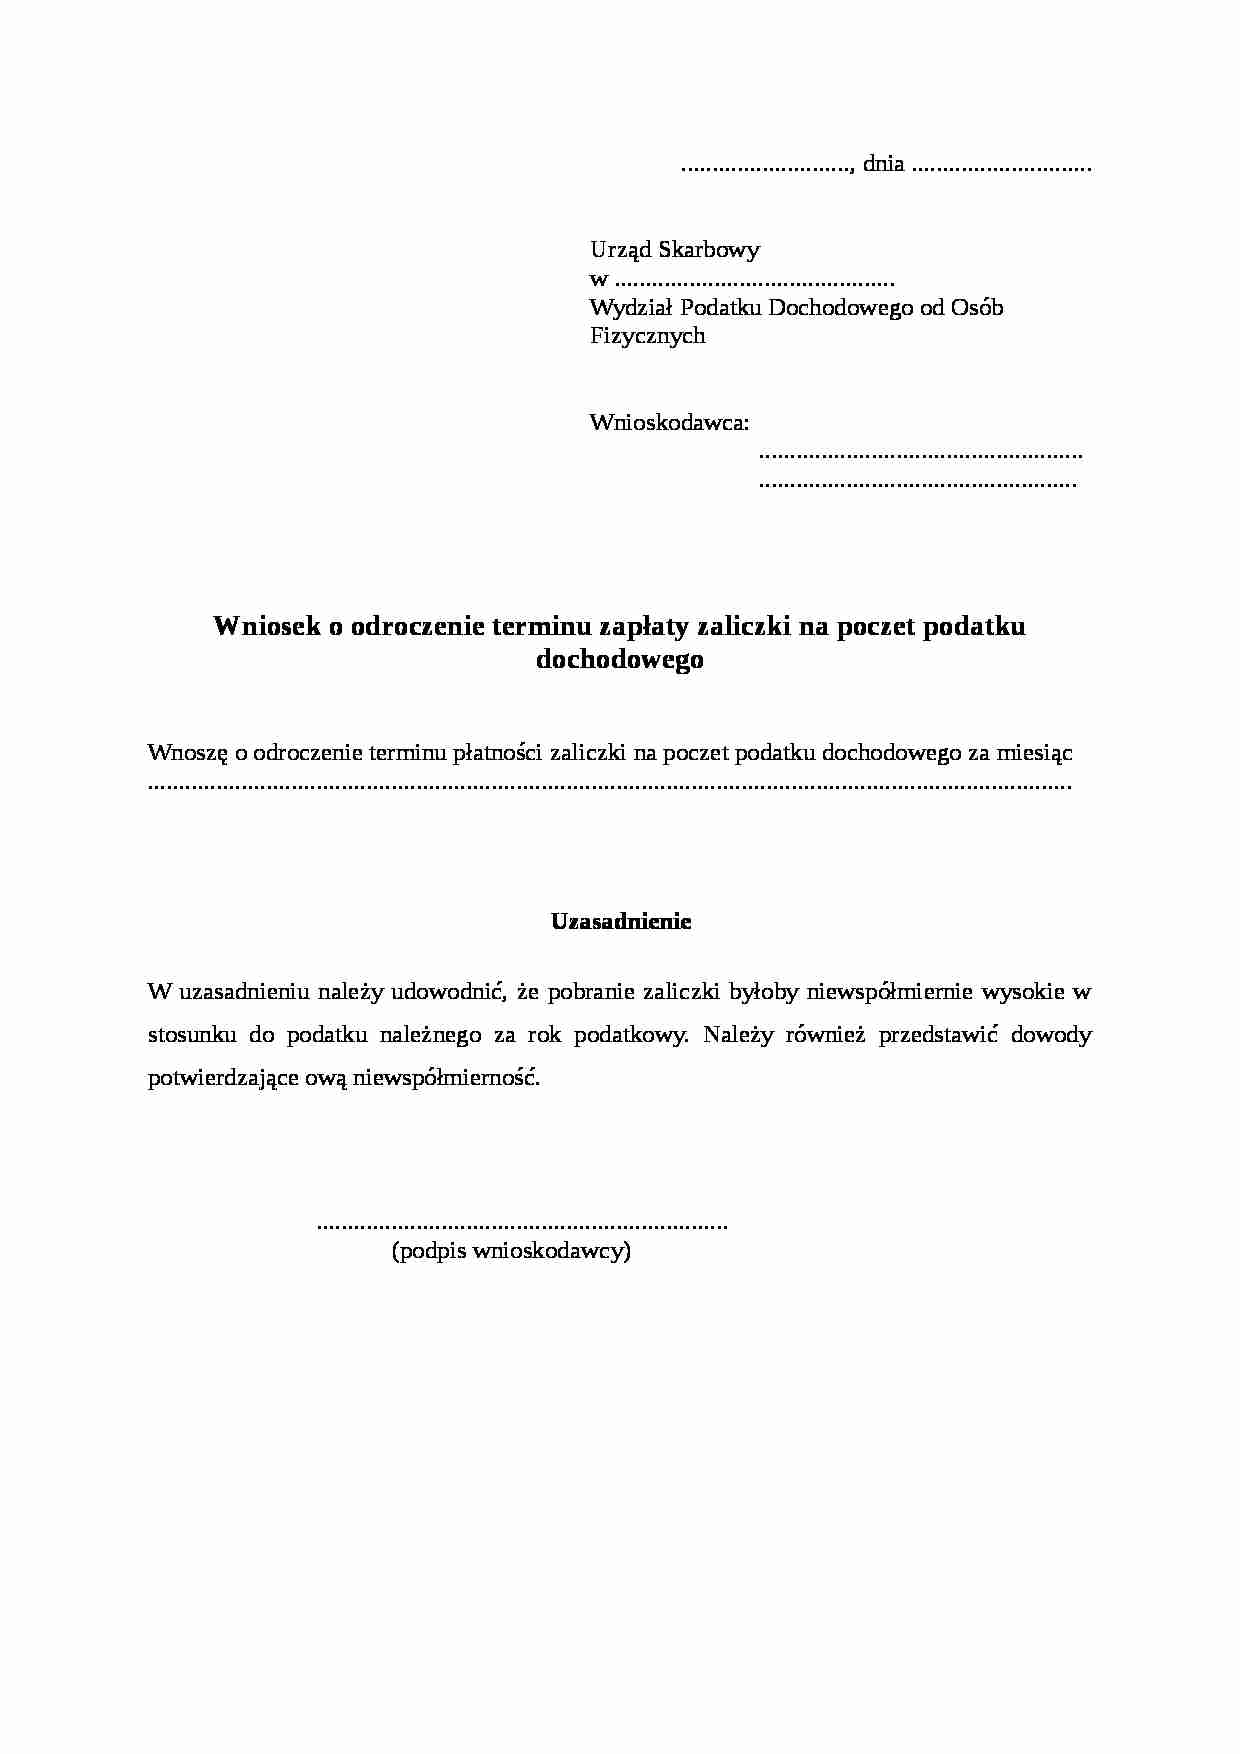 Badania I Odpowiedzi - Tarcza Antykryzysowa - Portal Gov.pl – Telegraph